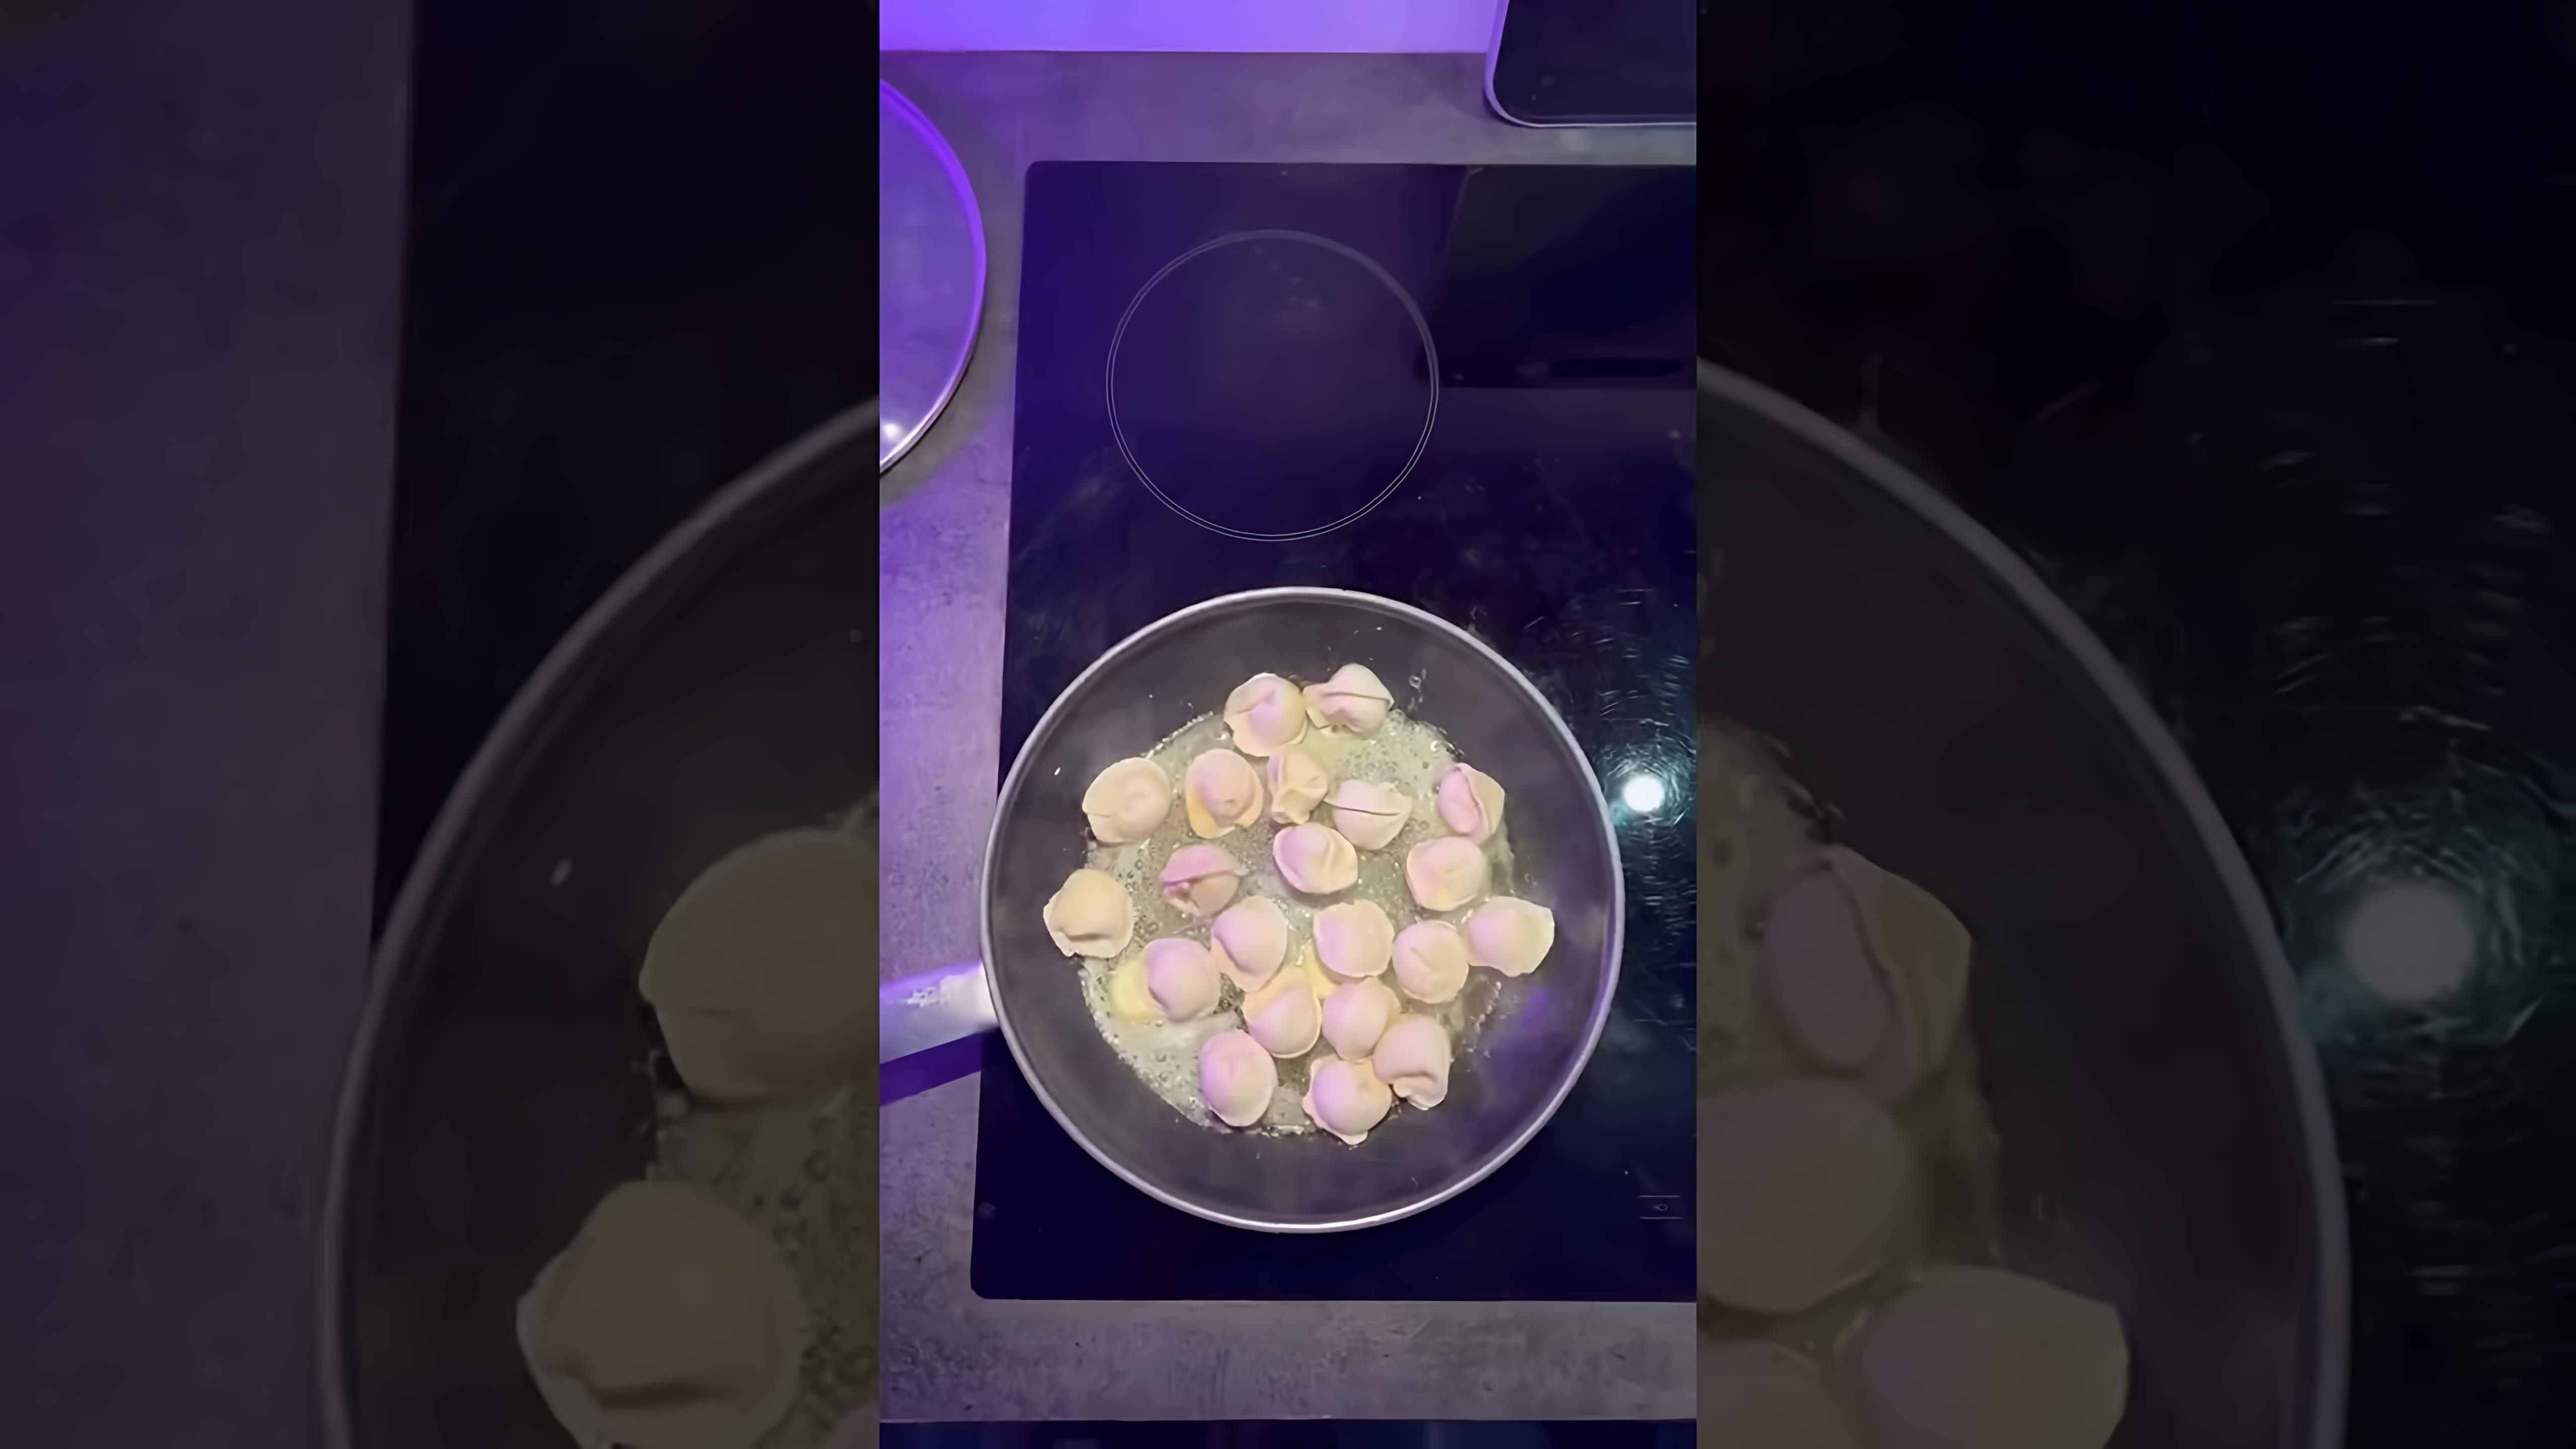 В этом видеоролике Джавид показывает, как приготовить жареные пельмени, используя простой и доступный рецепт